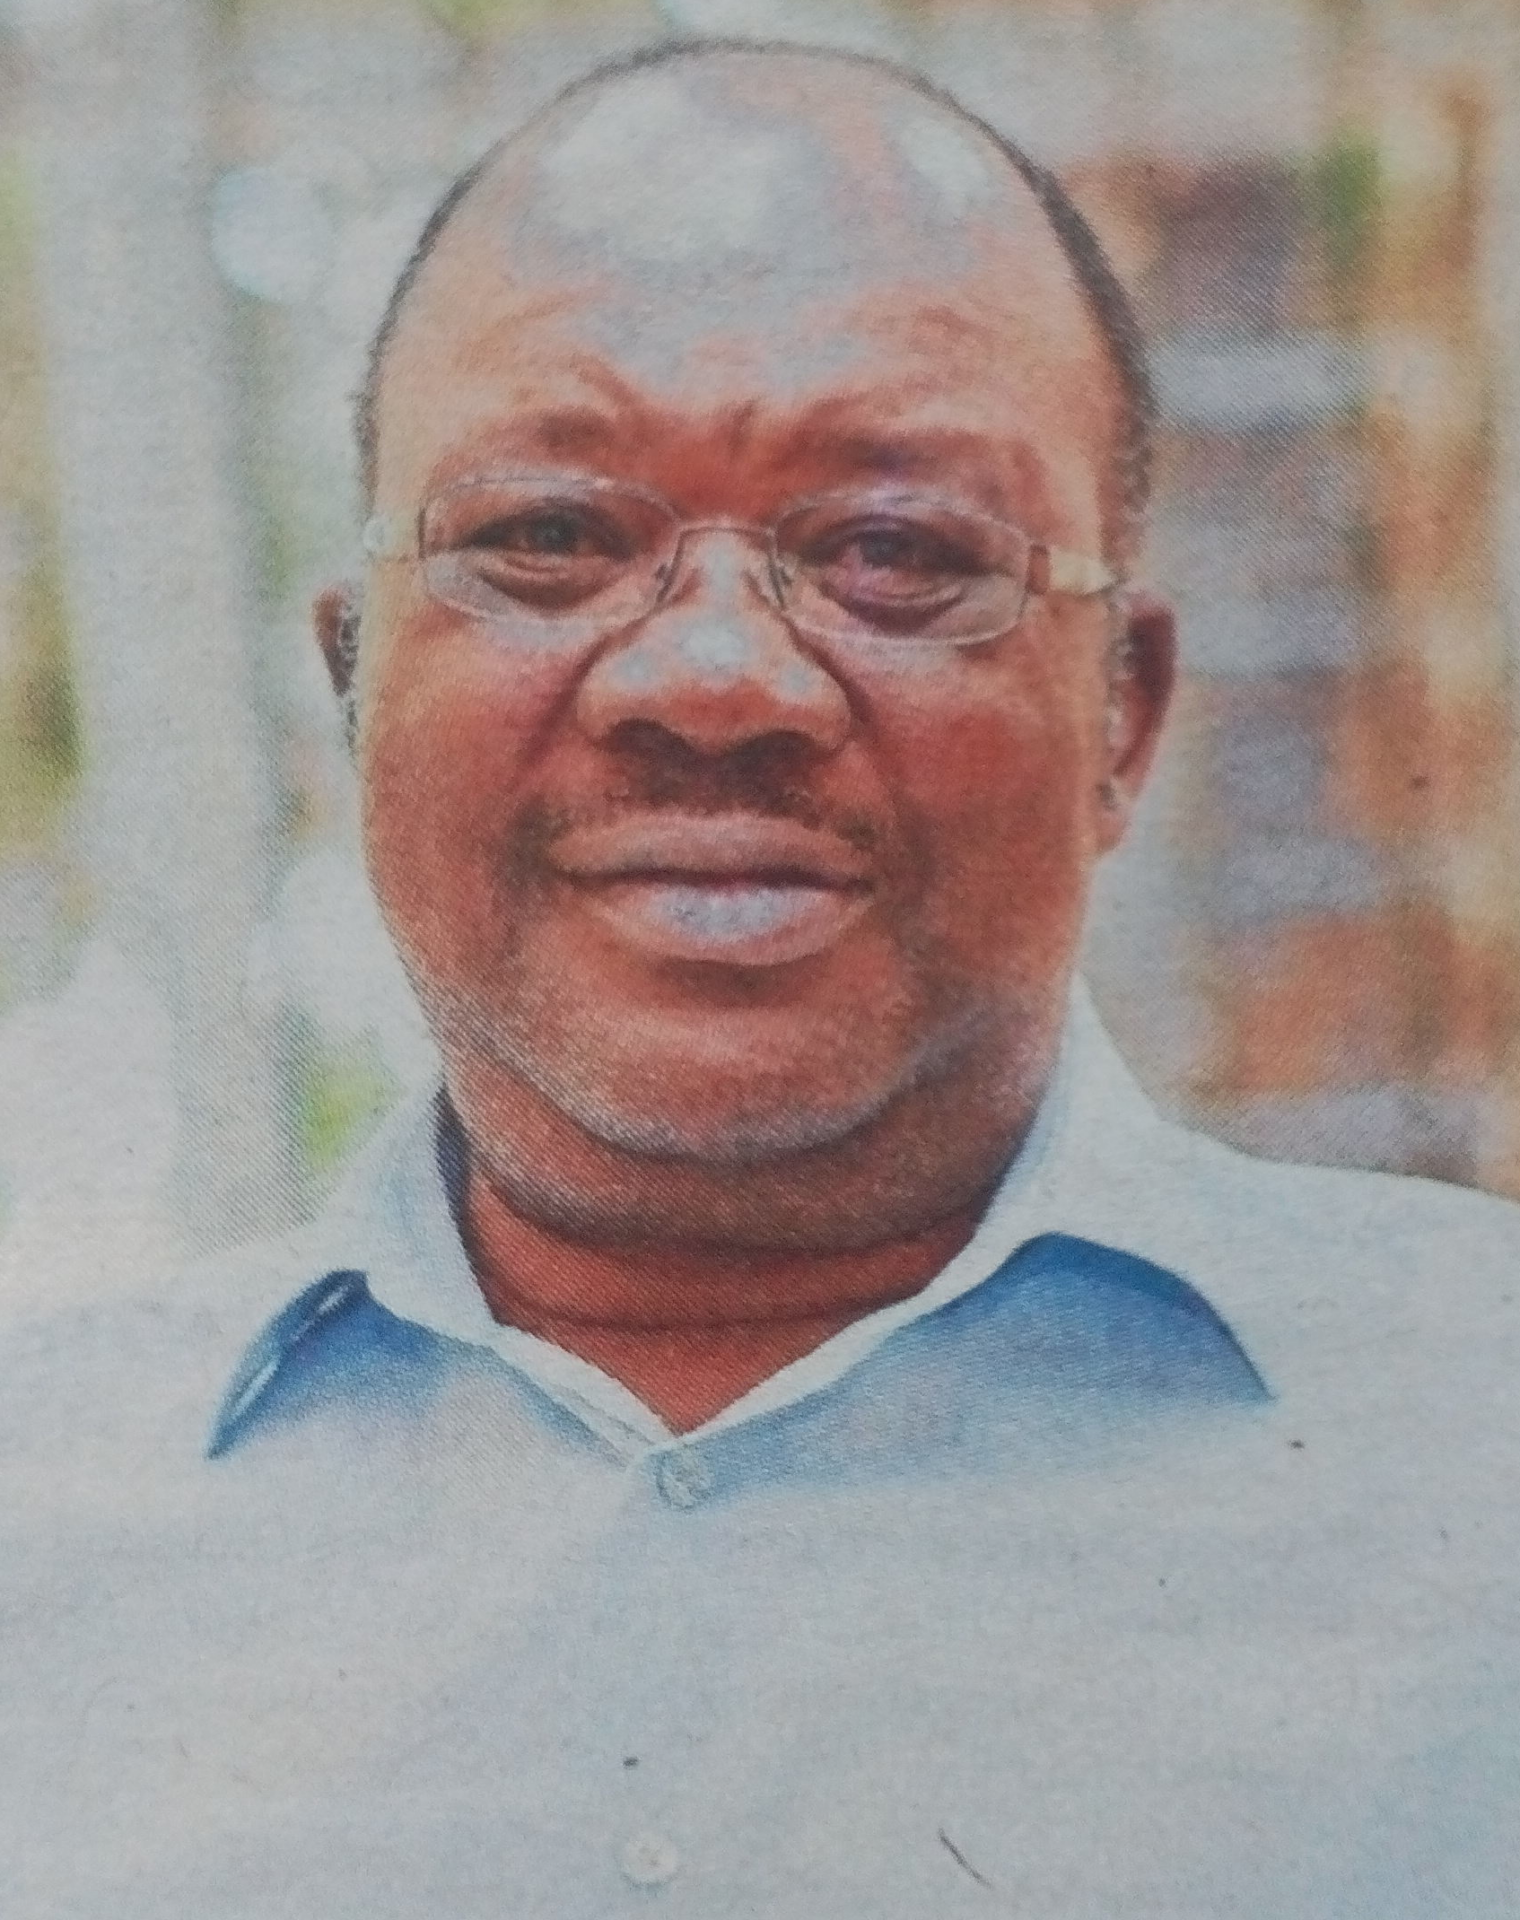 Obituary Image of Levi Omondi Ameka